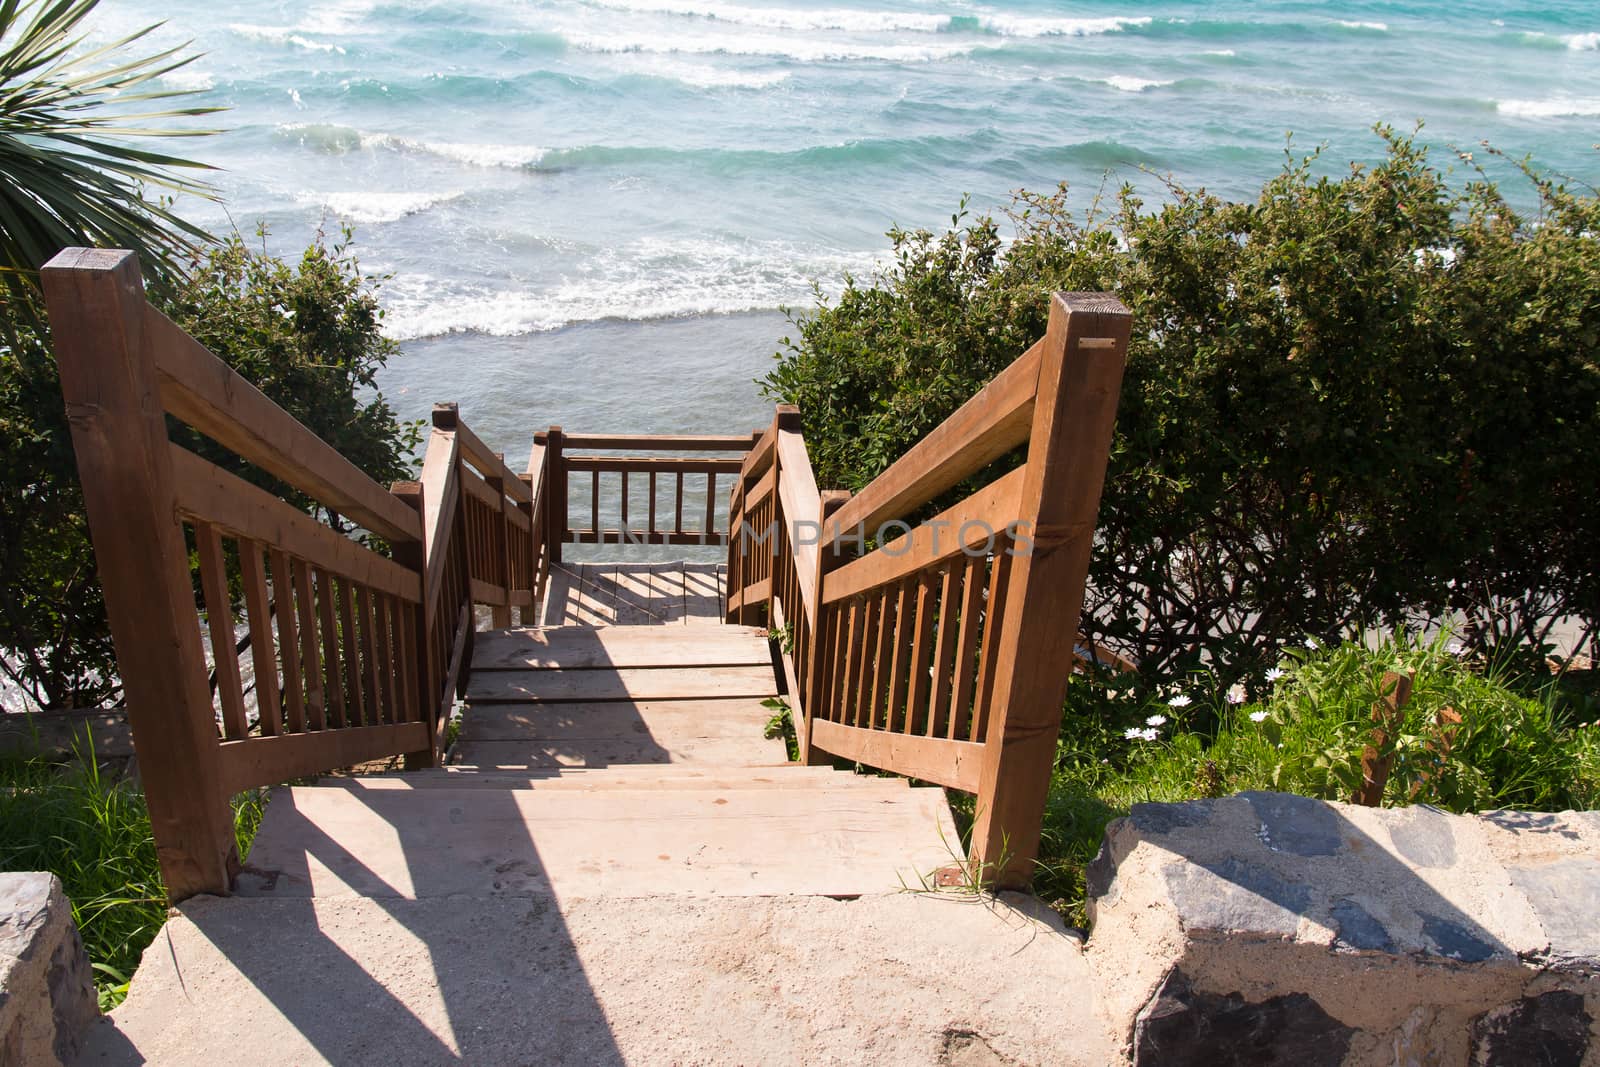 Stairs near beach and wavy clean sea.